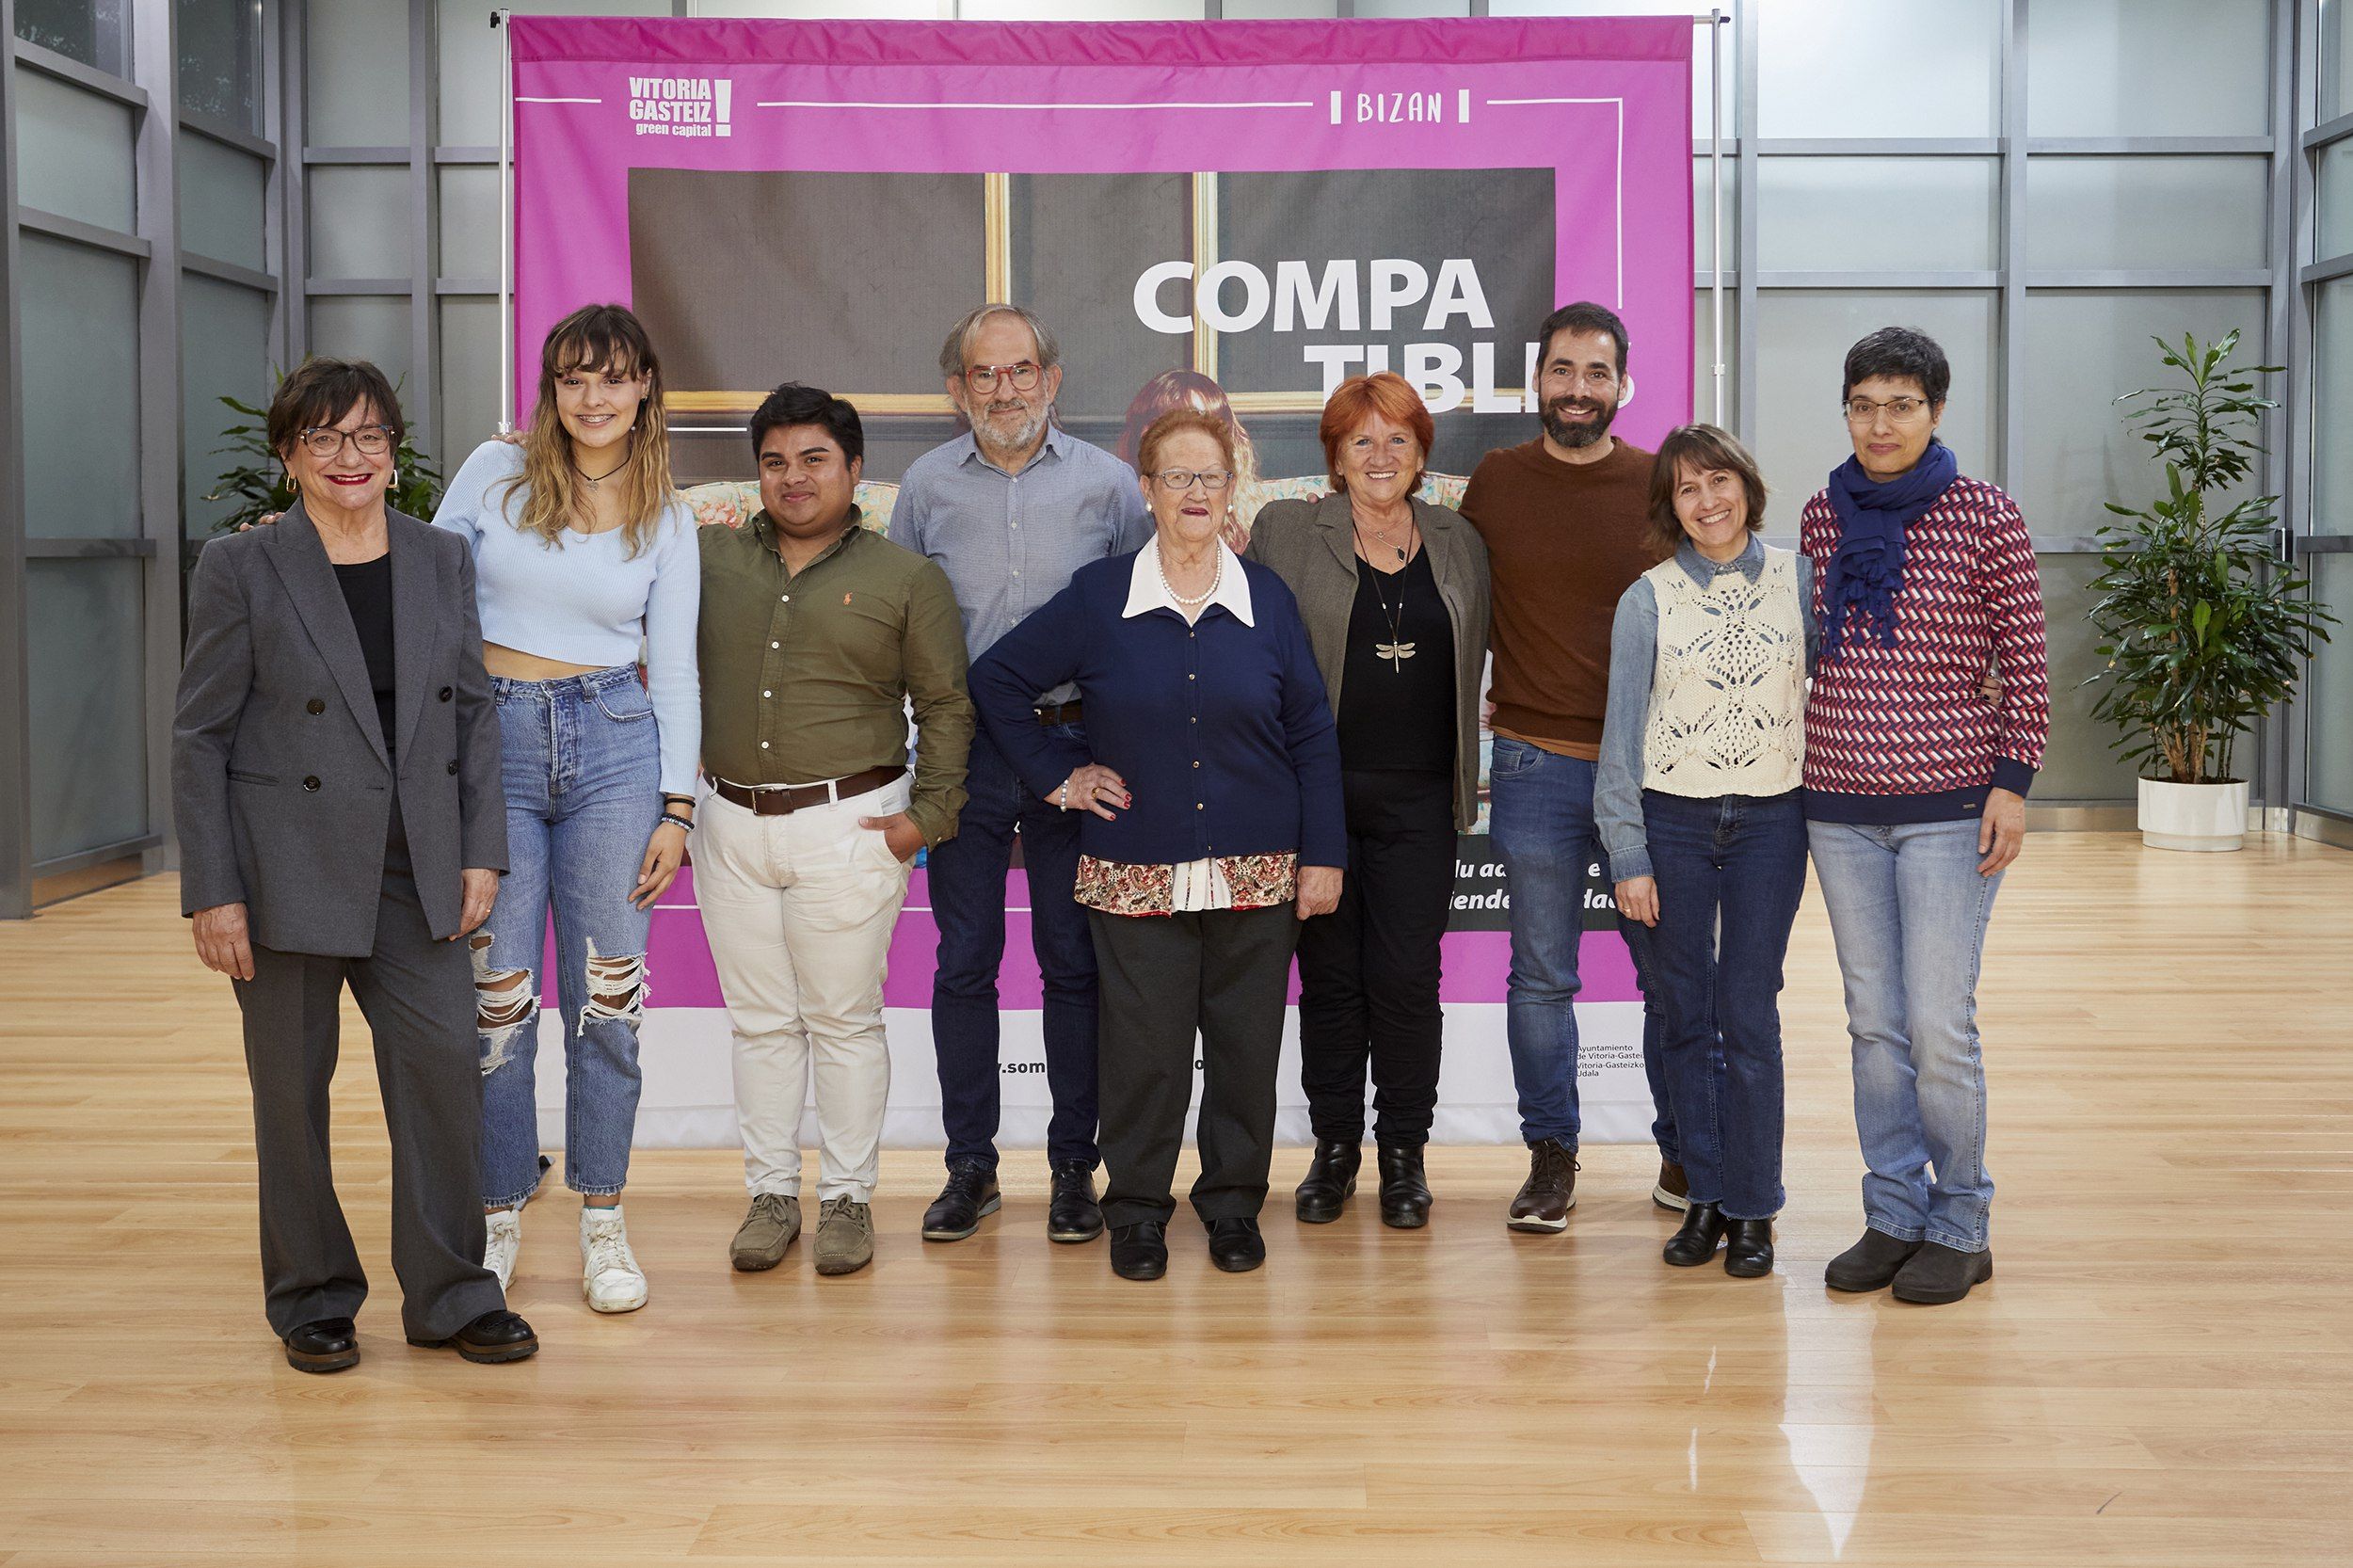 'Compatibles' demuestra que mayores y jóvenes conectan si tienen intereses comunes. Foto: Ayuntamiento de Vitoria-Gasteiz